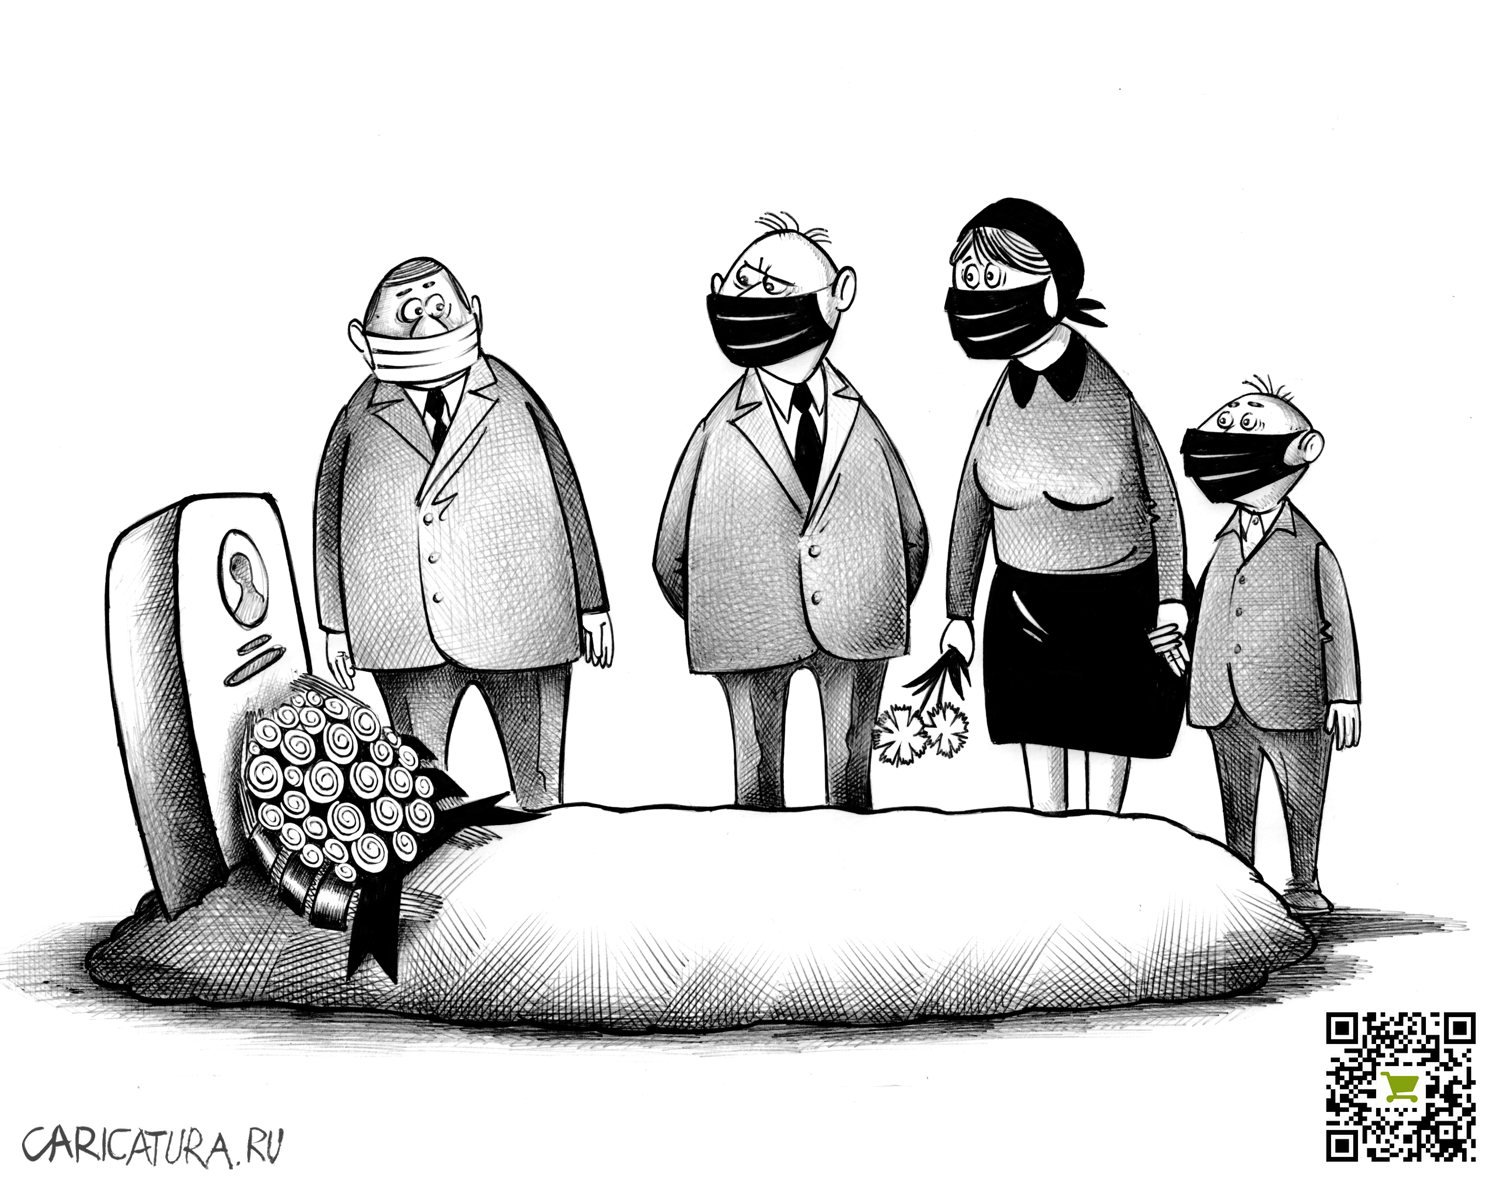 Карикатура "Траур", Сергей Корсун